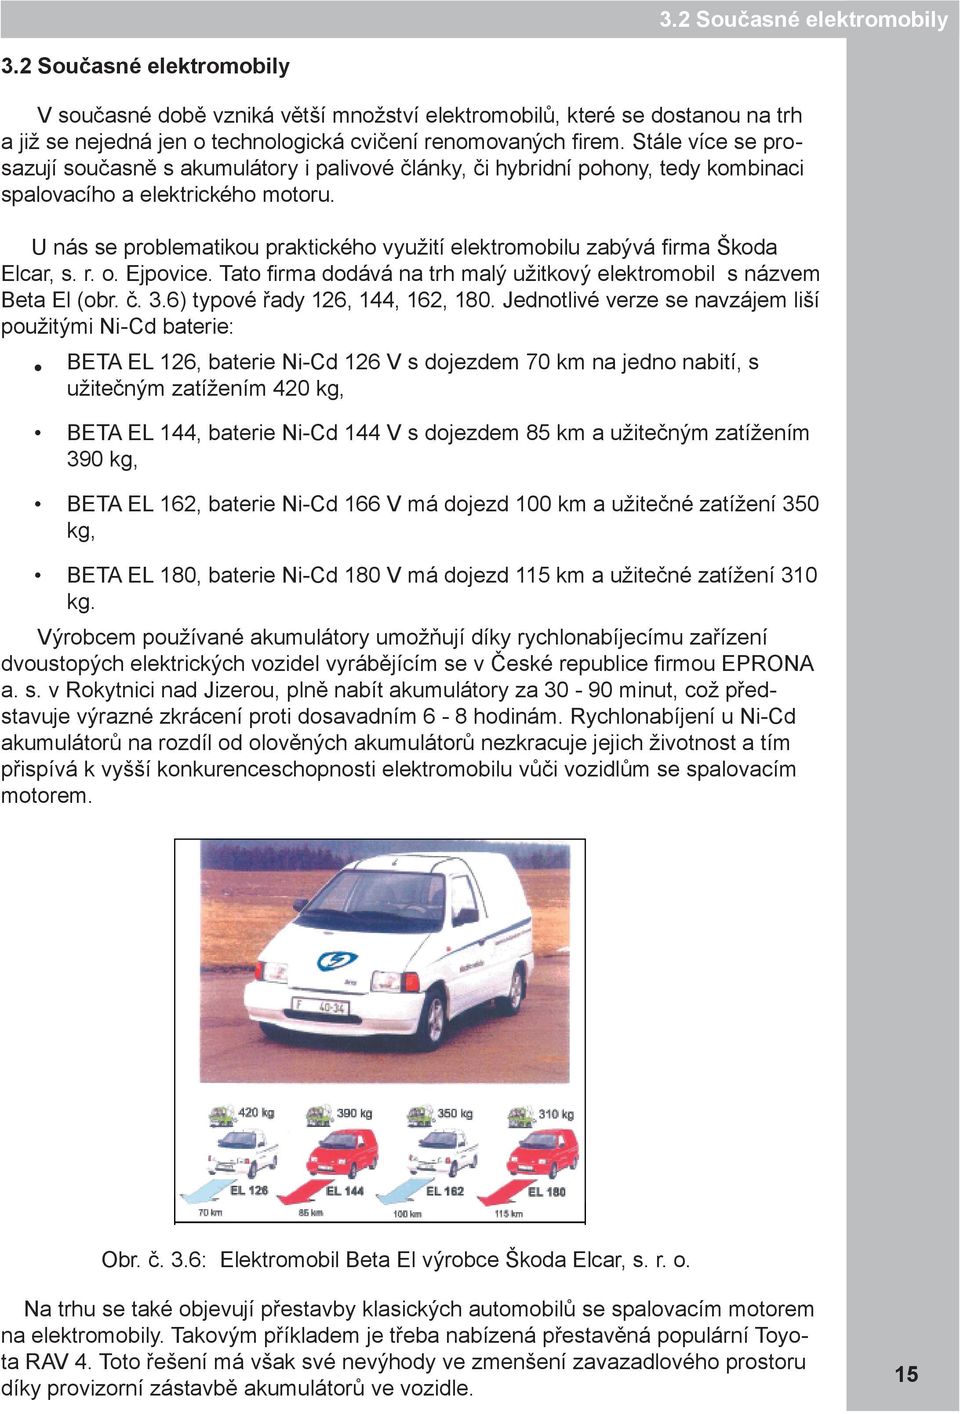 U nás se problematikou praktického využití elektromobilu zabývá firma Škoda Elcar, s. r. o. Ejpovice. Tato firma dodává na trh malý užitkový elektromobil s názvem Beta El (obr. č. 3.